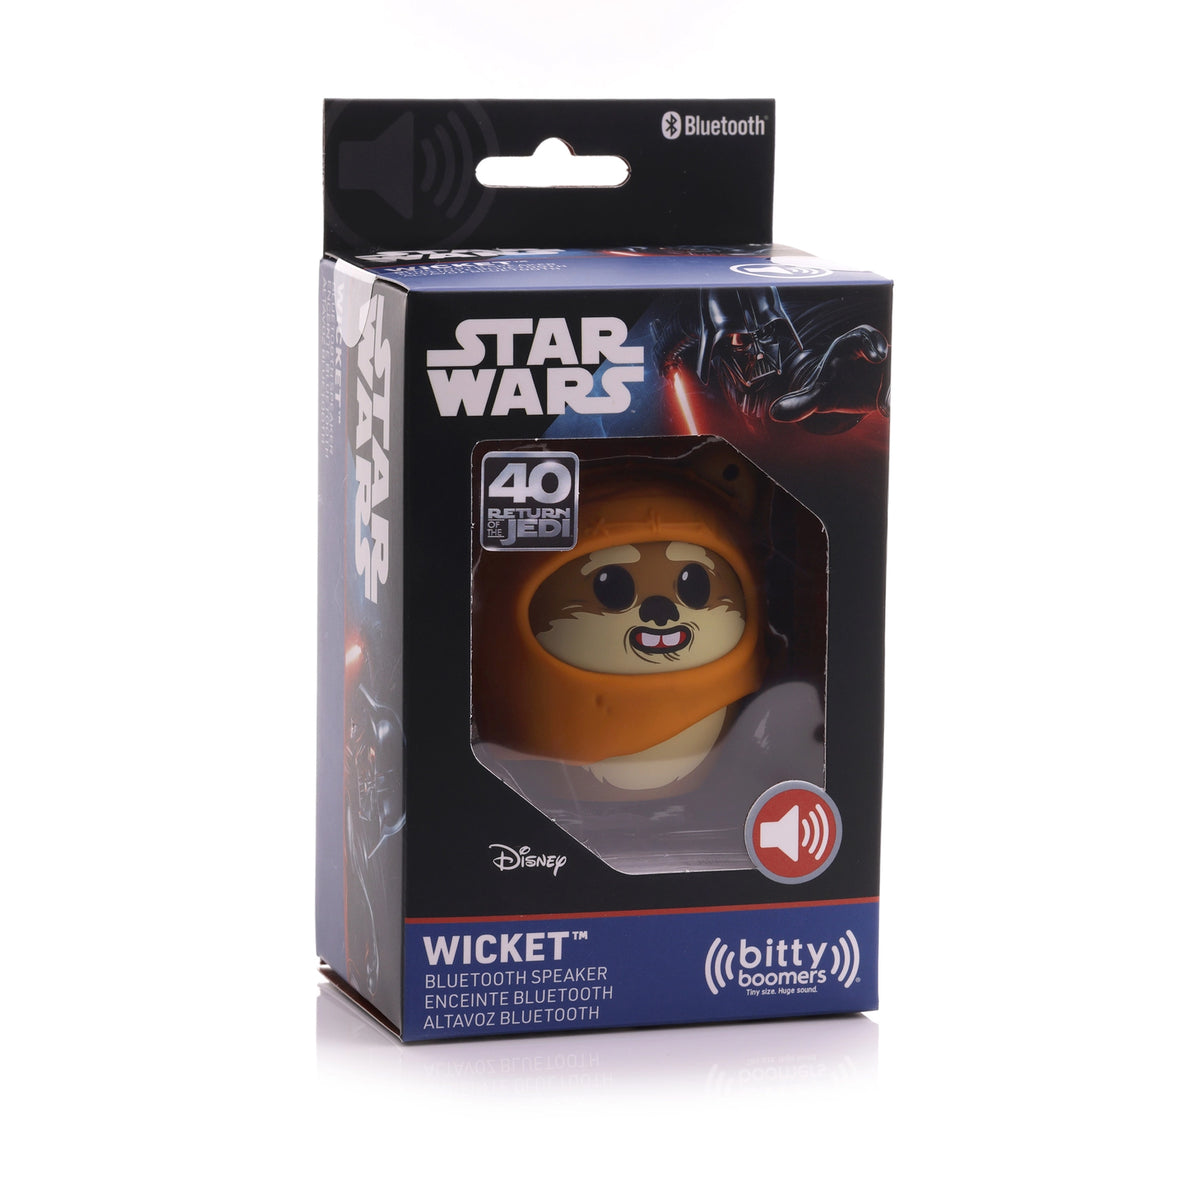 Star Wars Ewok Wicket Bluetooth Speaker